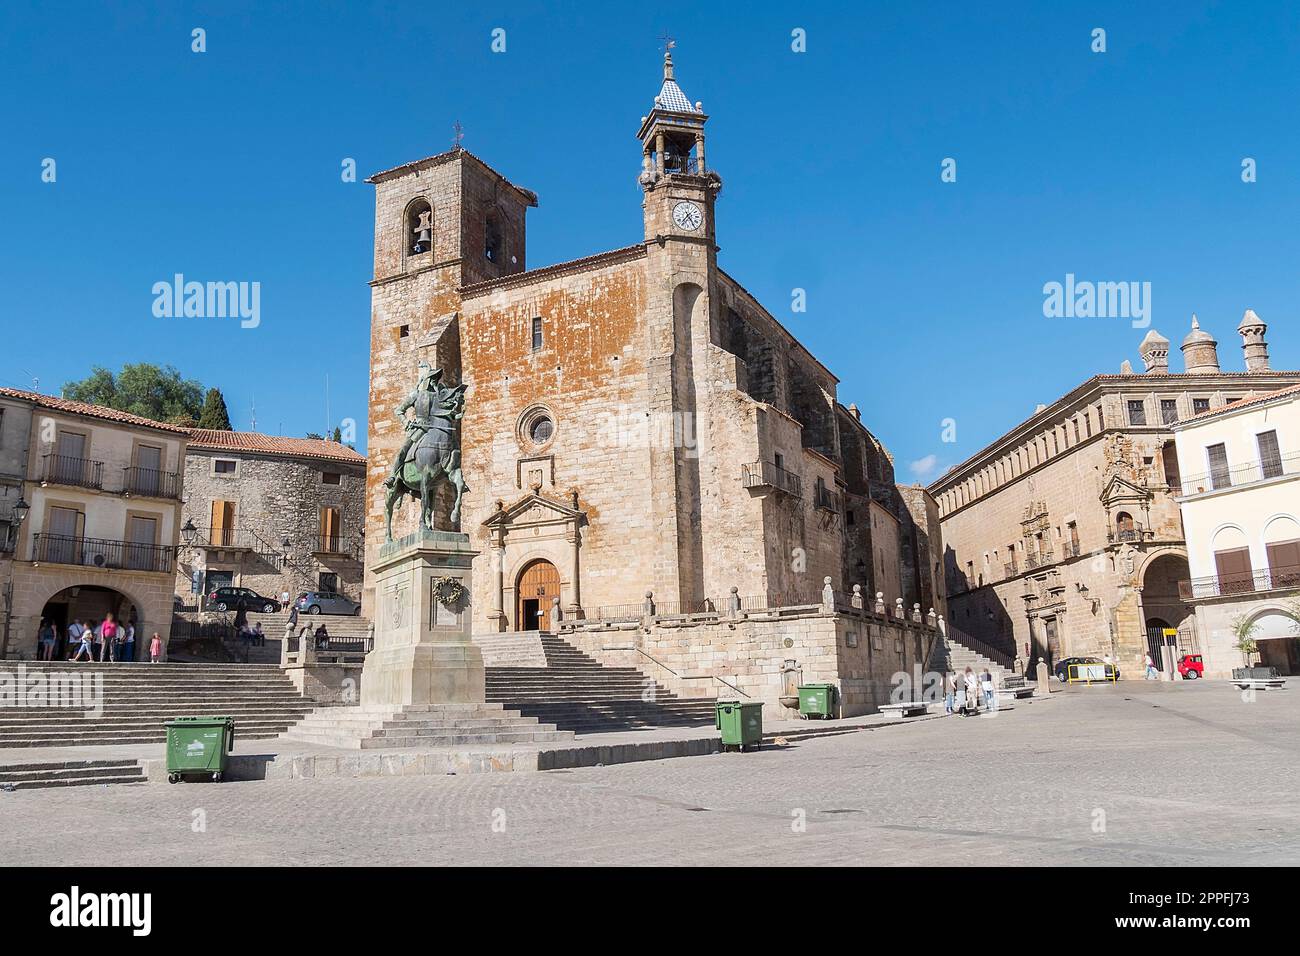 Hauptplatz von Trujillo. Besichtigungen der Kirche San Martin und Statue von Francisco Pisarro (Trujillo, Caceres, Spanien) Stockfoto